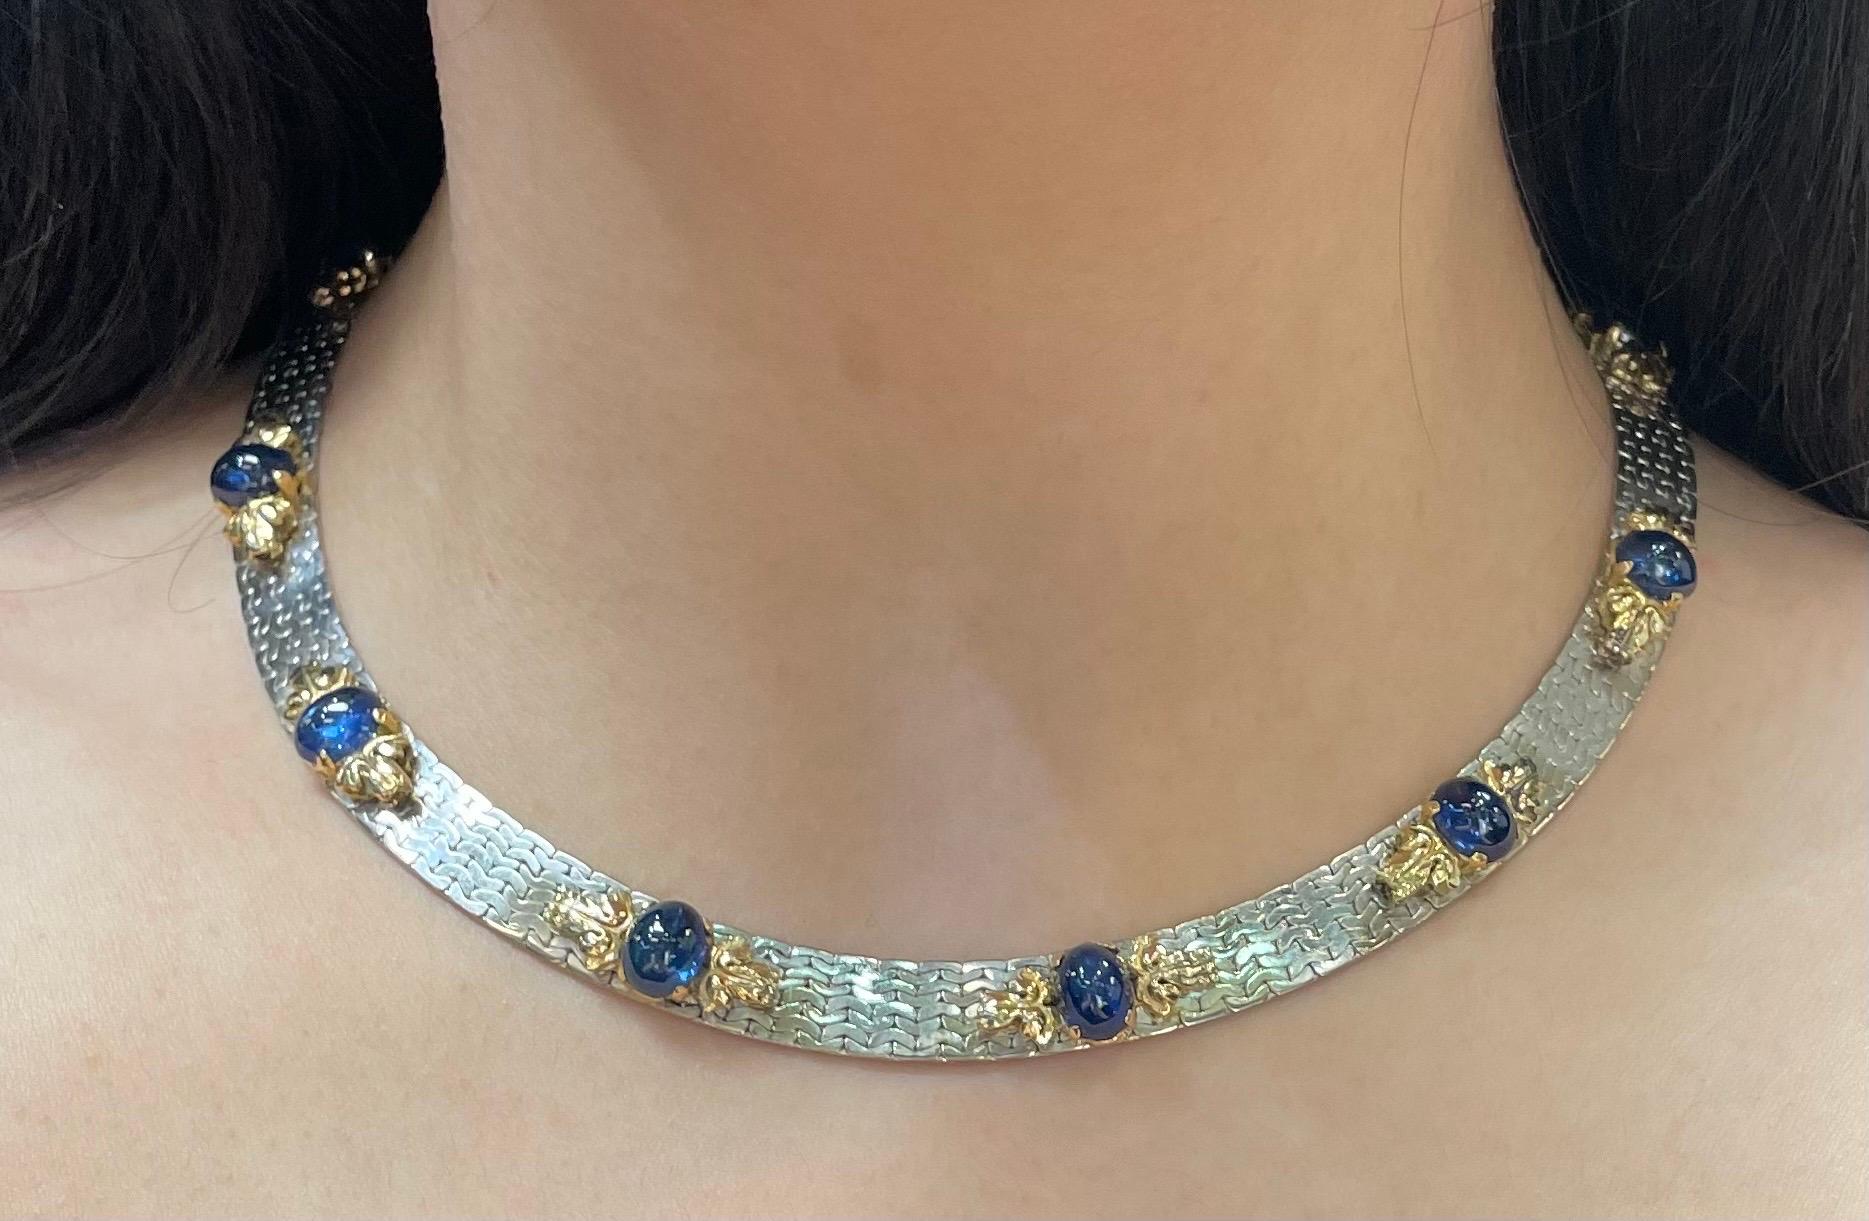 Cabochon Saphir Halskette

Eine Halskette aus Weiß- und Gelbgold, besetzt mit acht Cabochon-Saphiren. 

Ungefähres Gewicht des Saphirs: 23.12 Karat
Ungefähre Länge: 15